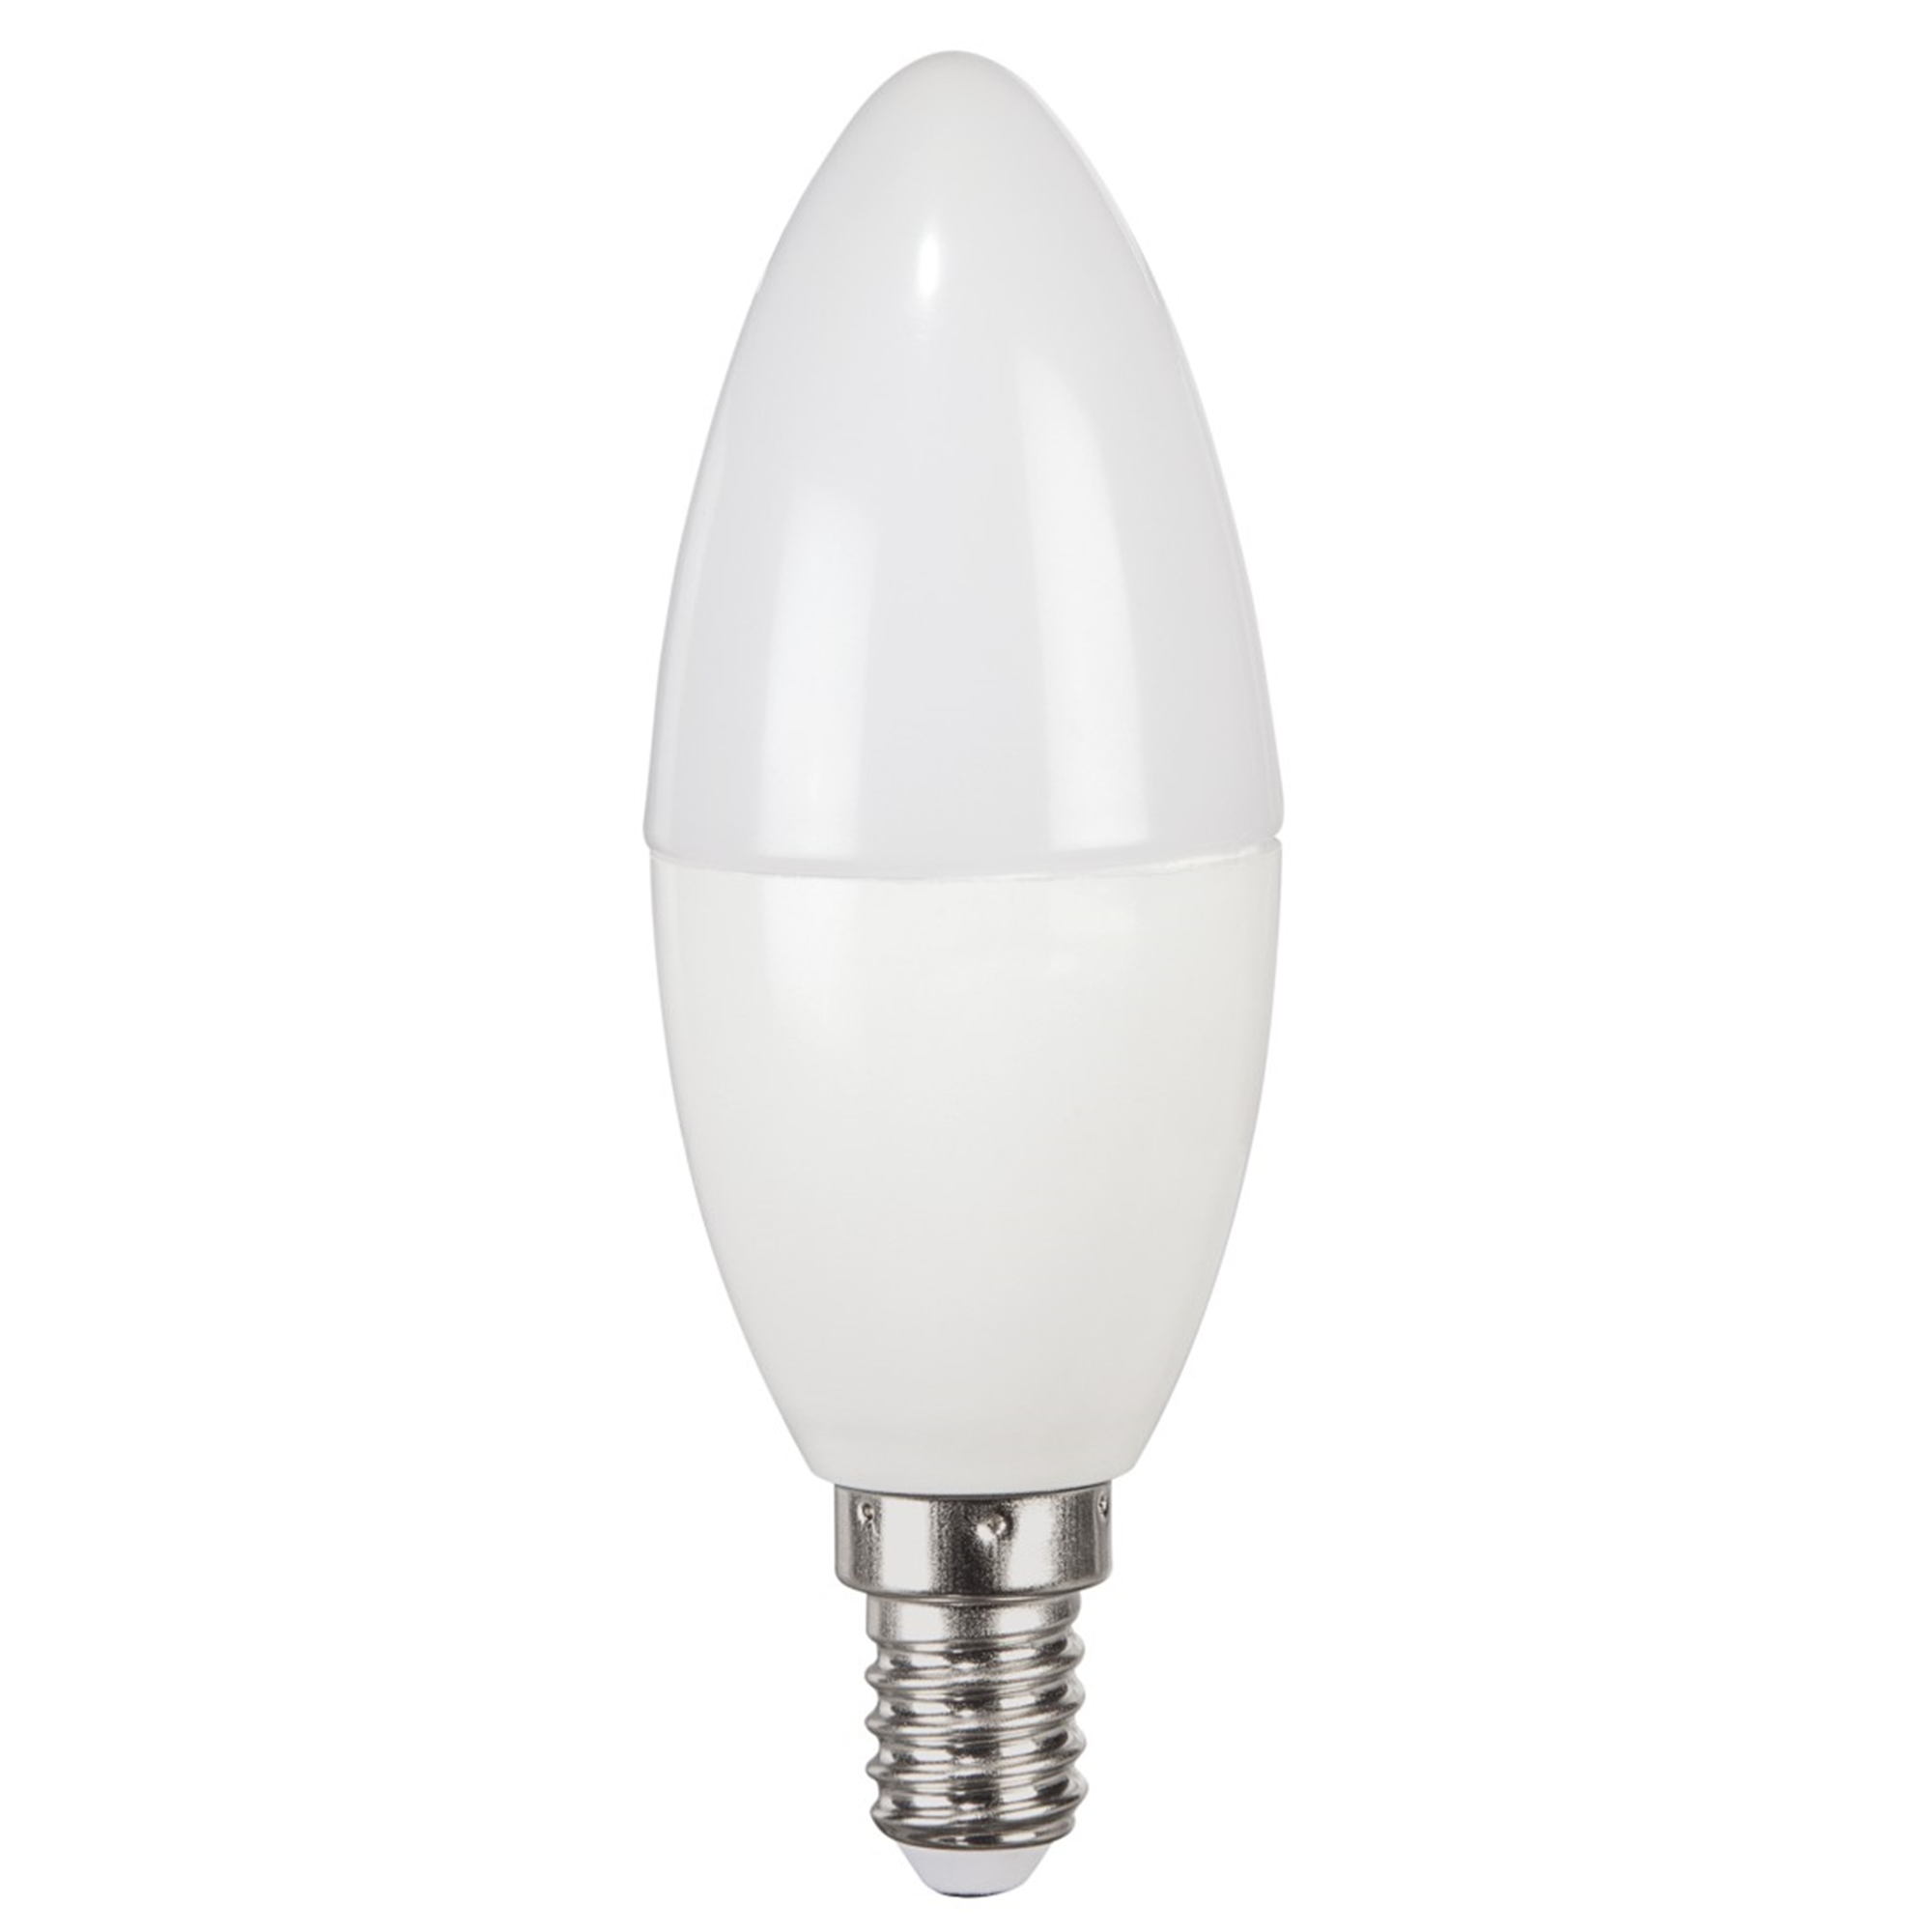 XAVAX E14, 806lm LED-Lampe 60W E14 Warmweiß ersetzt